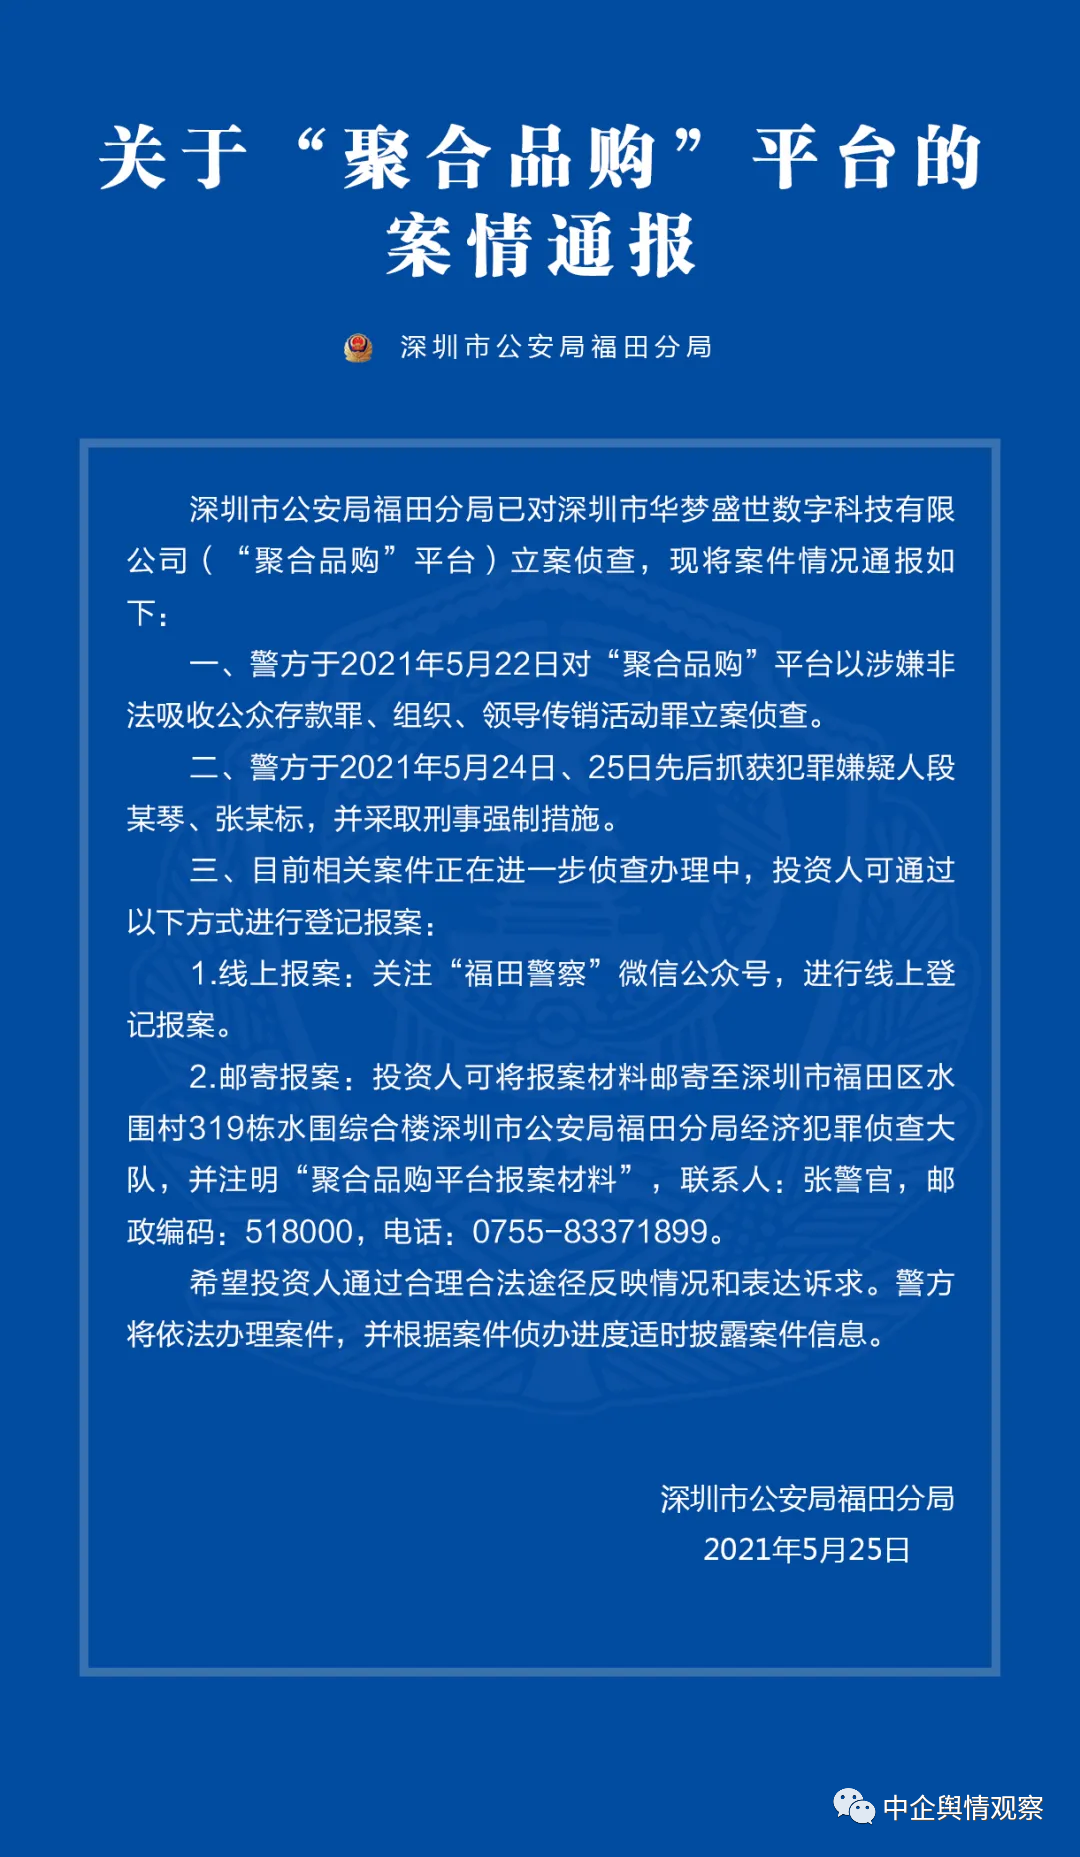 【打传】深圳警方对“聚合品购”平台立案侦查；福成六期一传销窝点被端了，当场查封！3人被带走插图